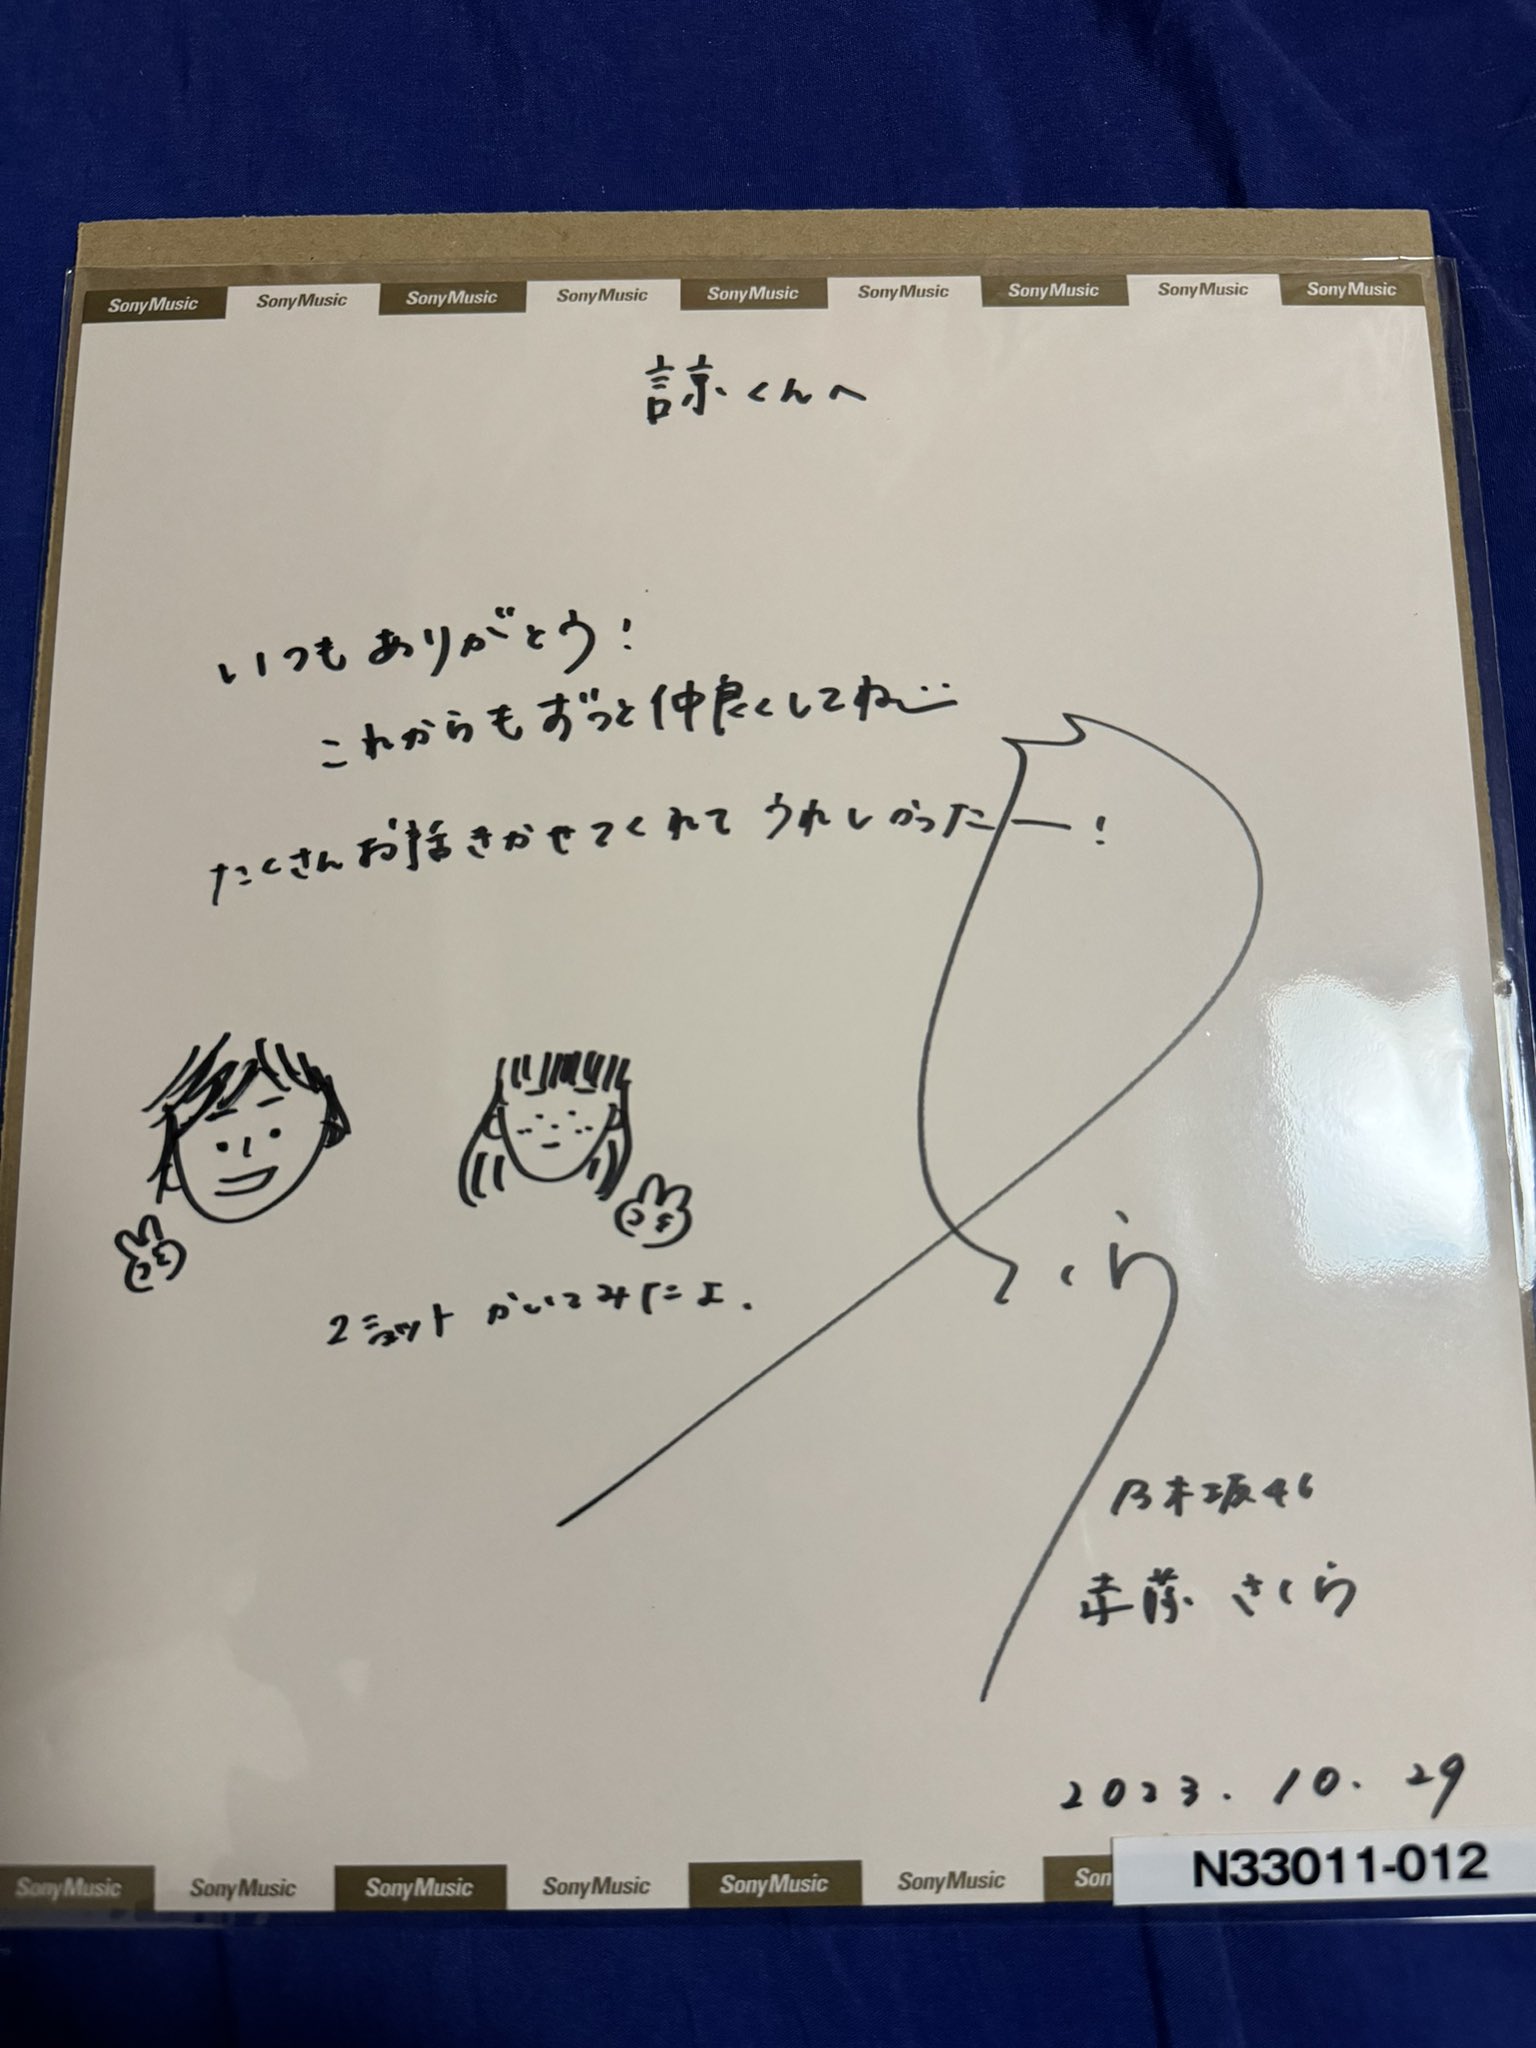 乃木坂46 遠藤さくら 直筆サインチェキ - アイドル